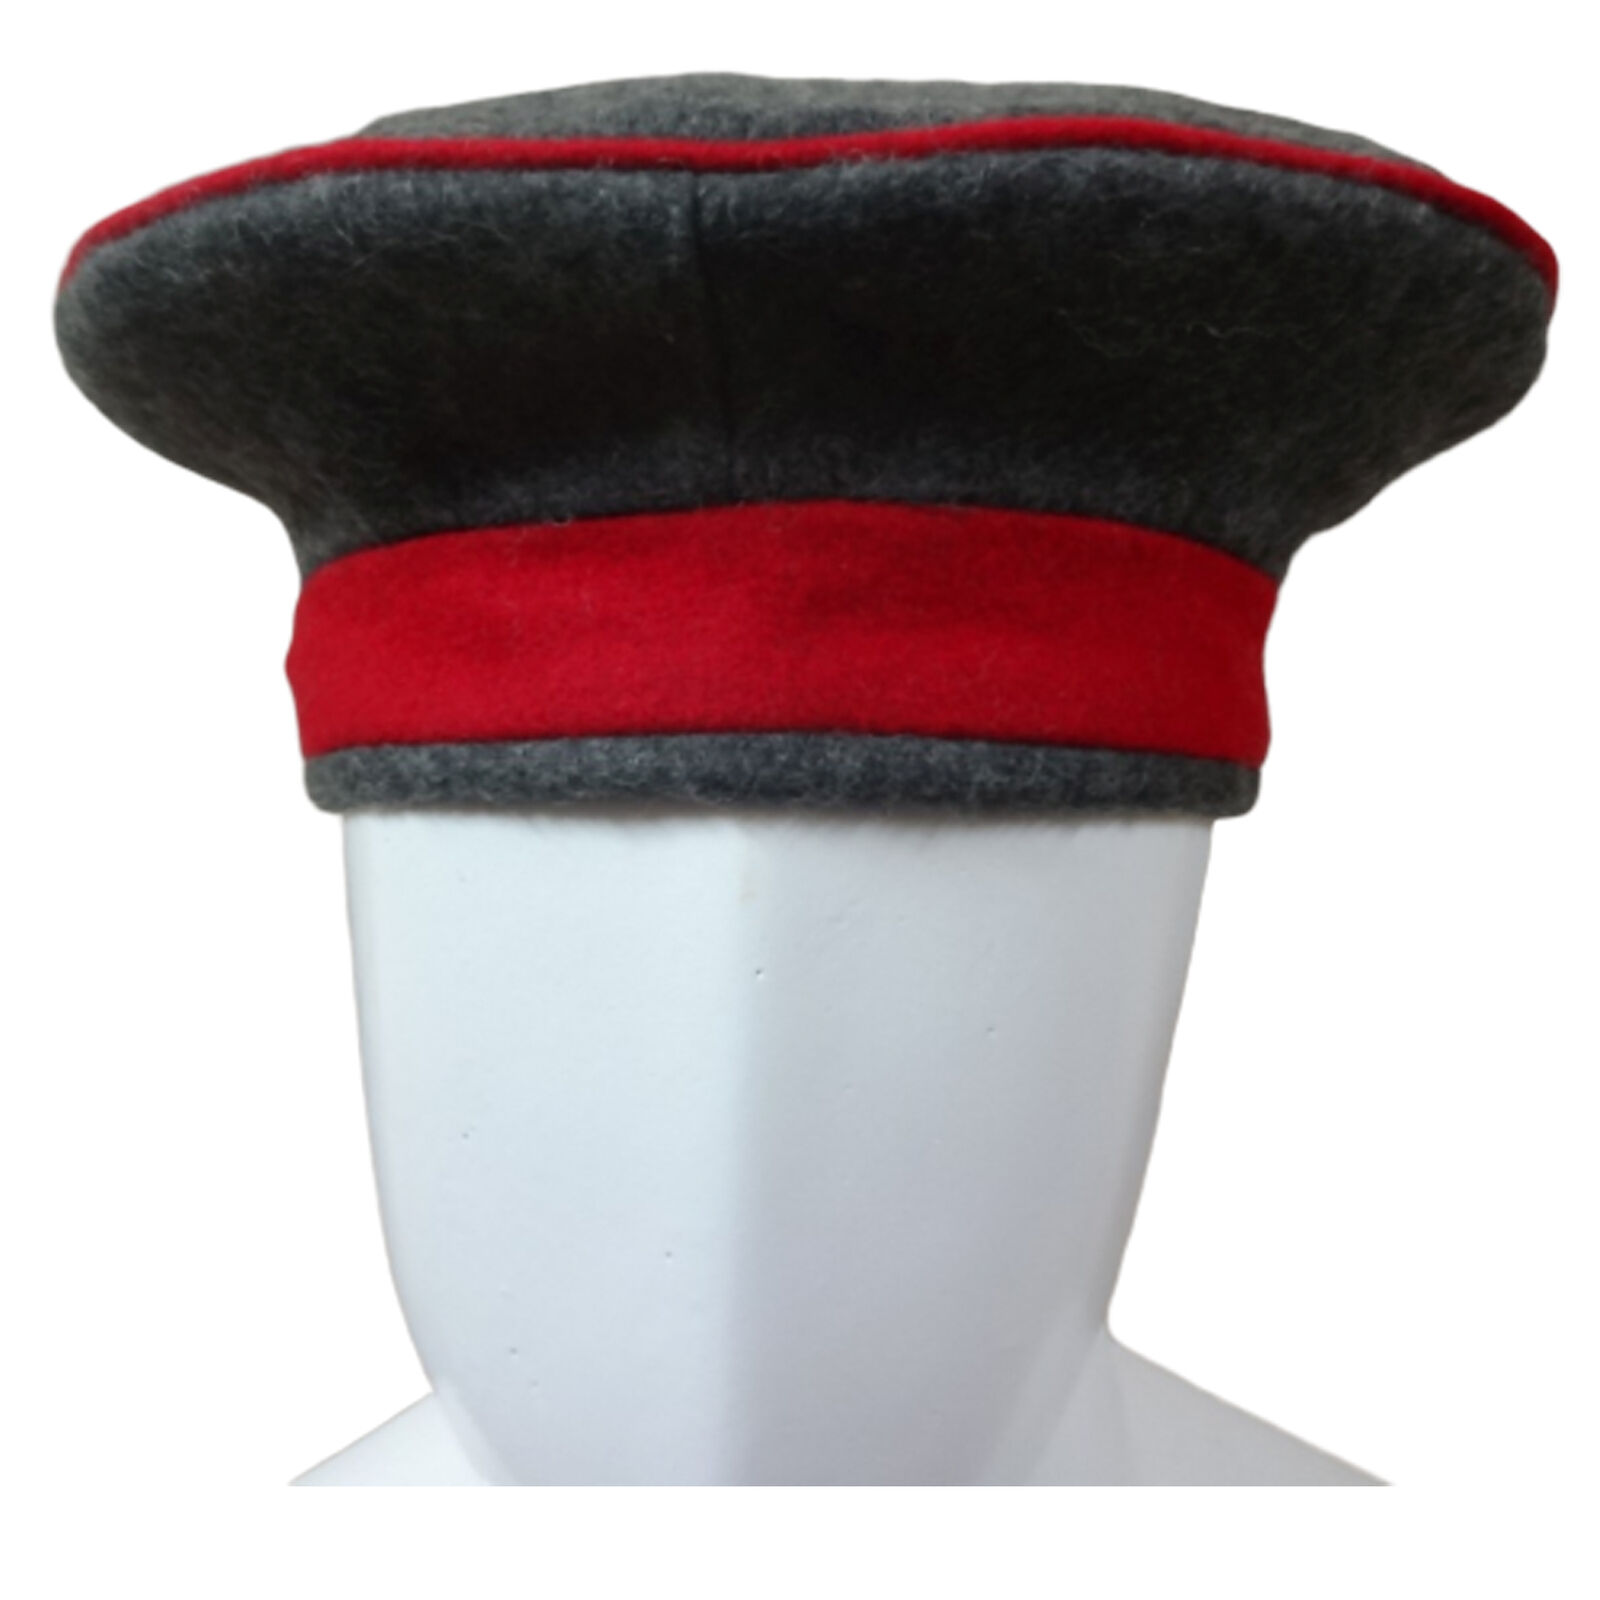 Kratzchen Field Cap M10/Monarchy Empire Uniform Cap Size 58cm (US Size 7.25) O04